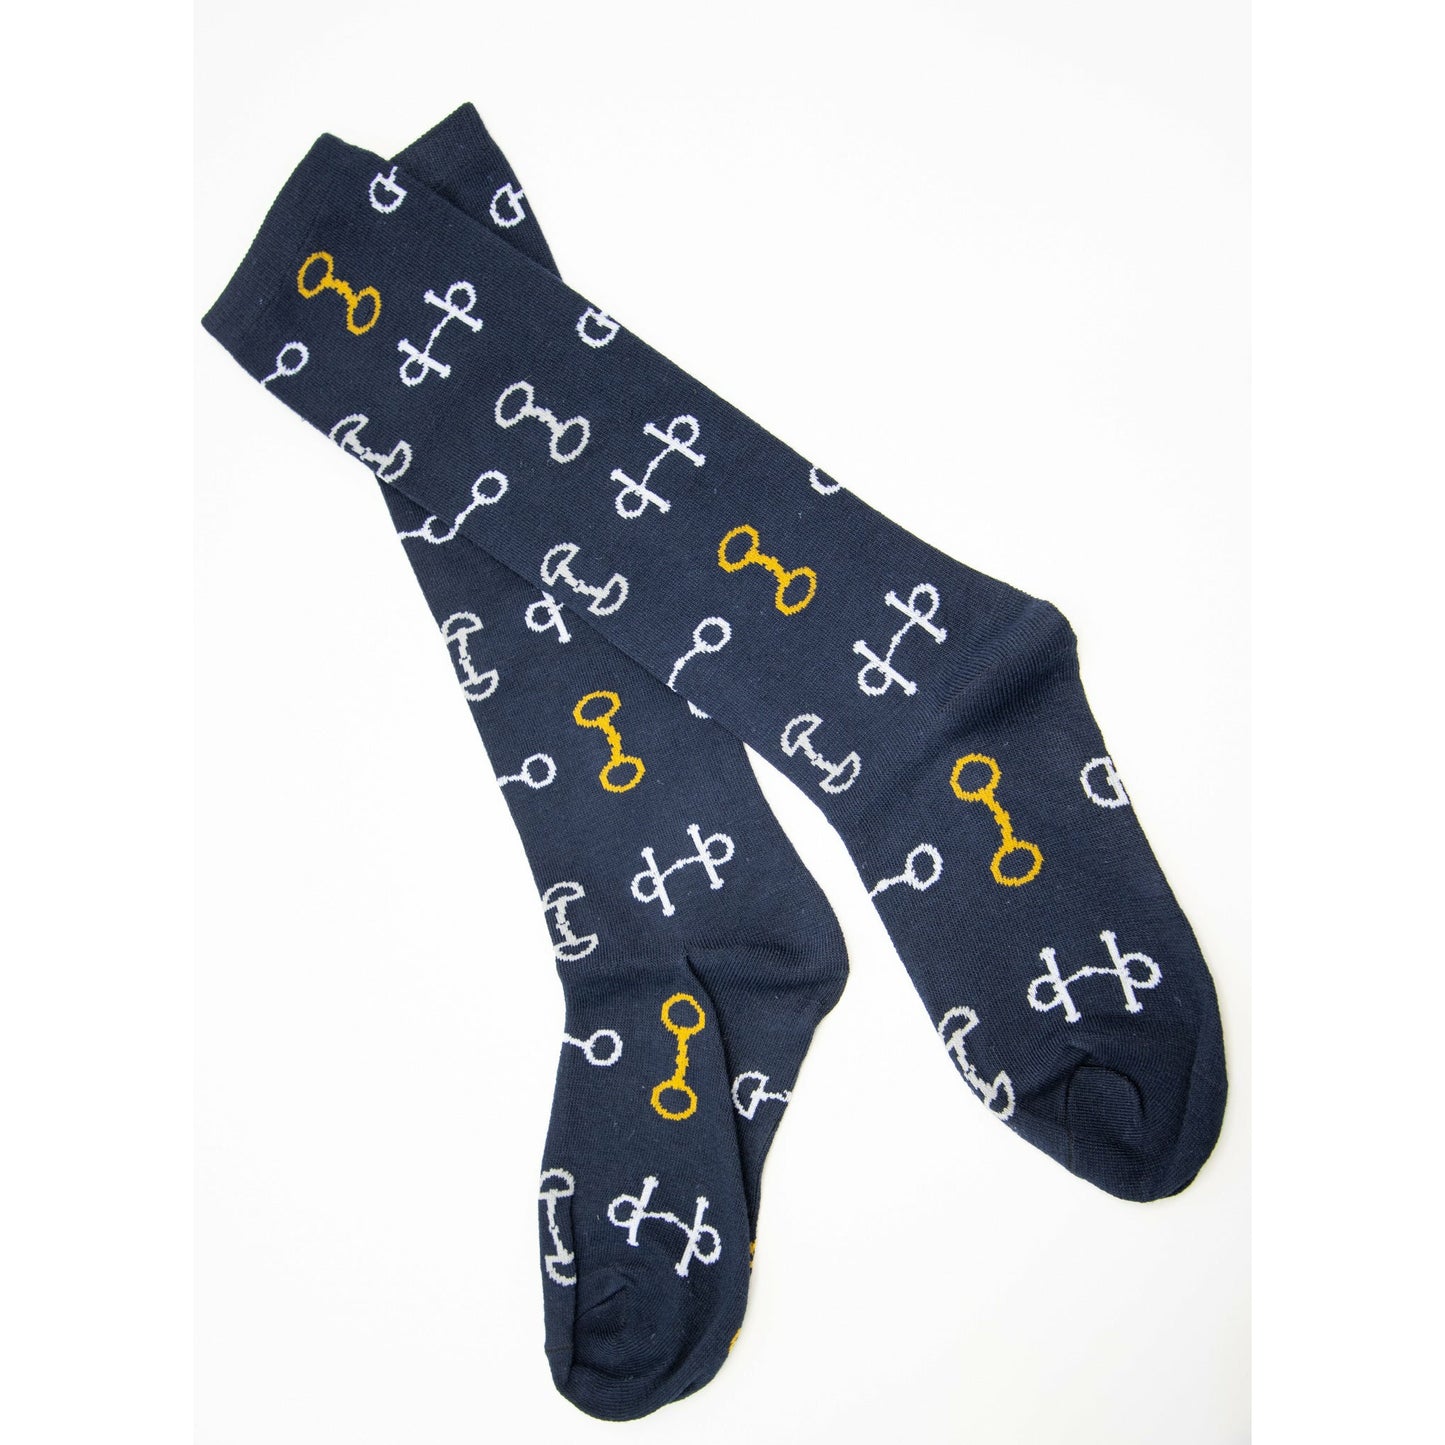 Snaffle Bit Ladies' Knee Socks - One Pair - Navy Blue